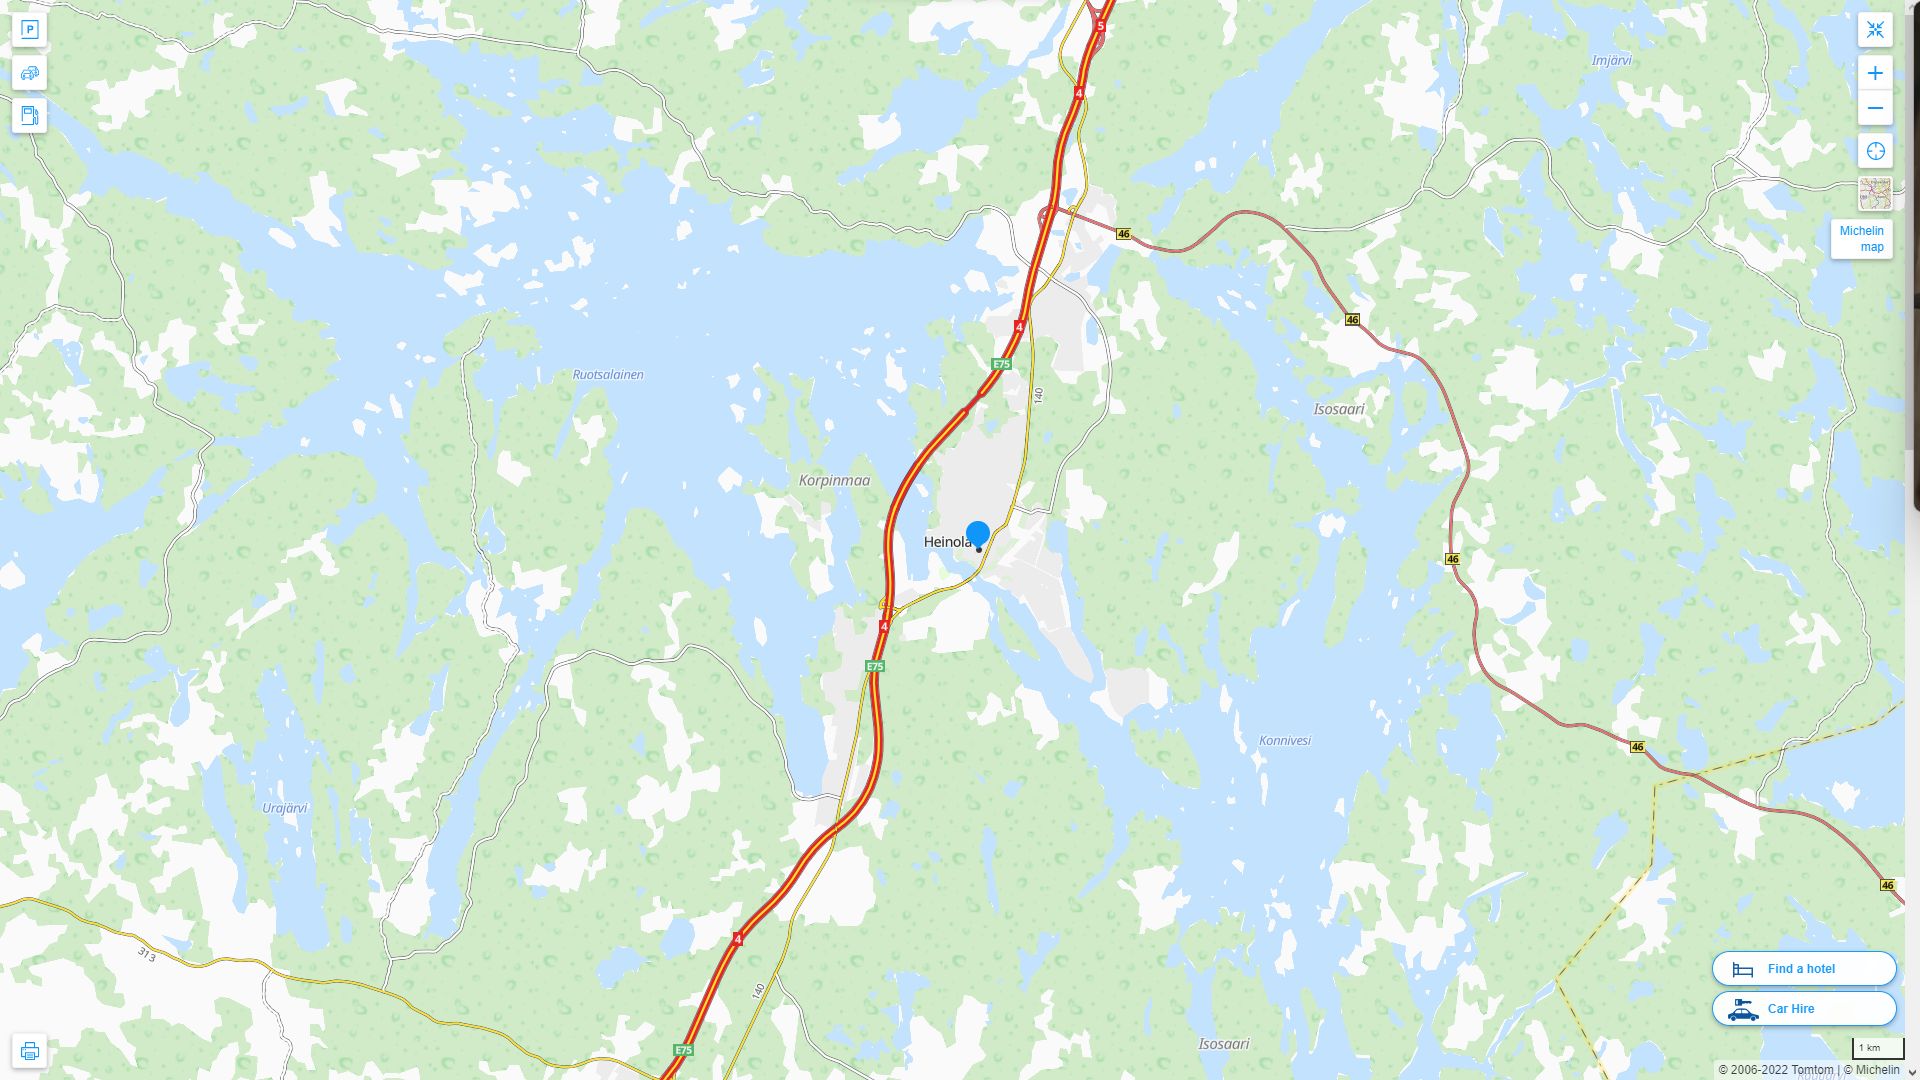 Heinola Finlande Autoroute et carte routiere